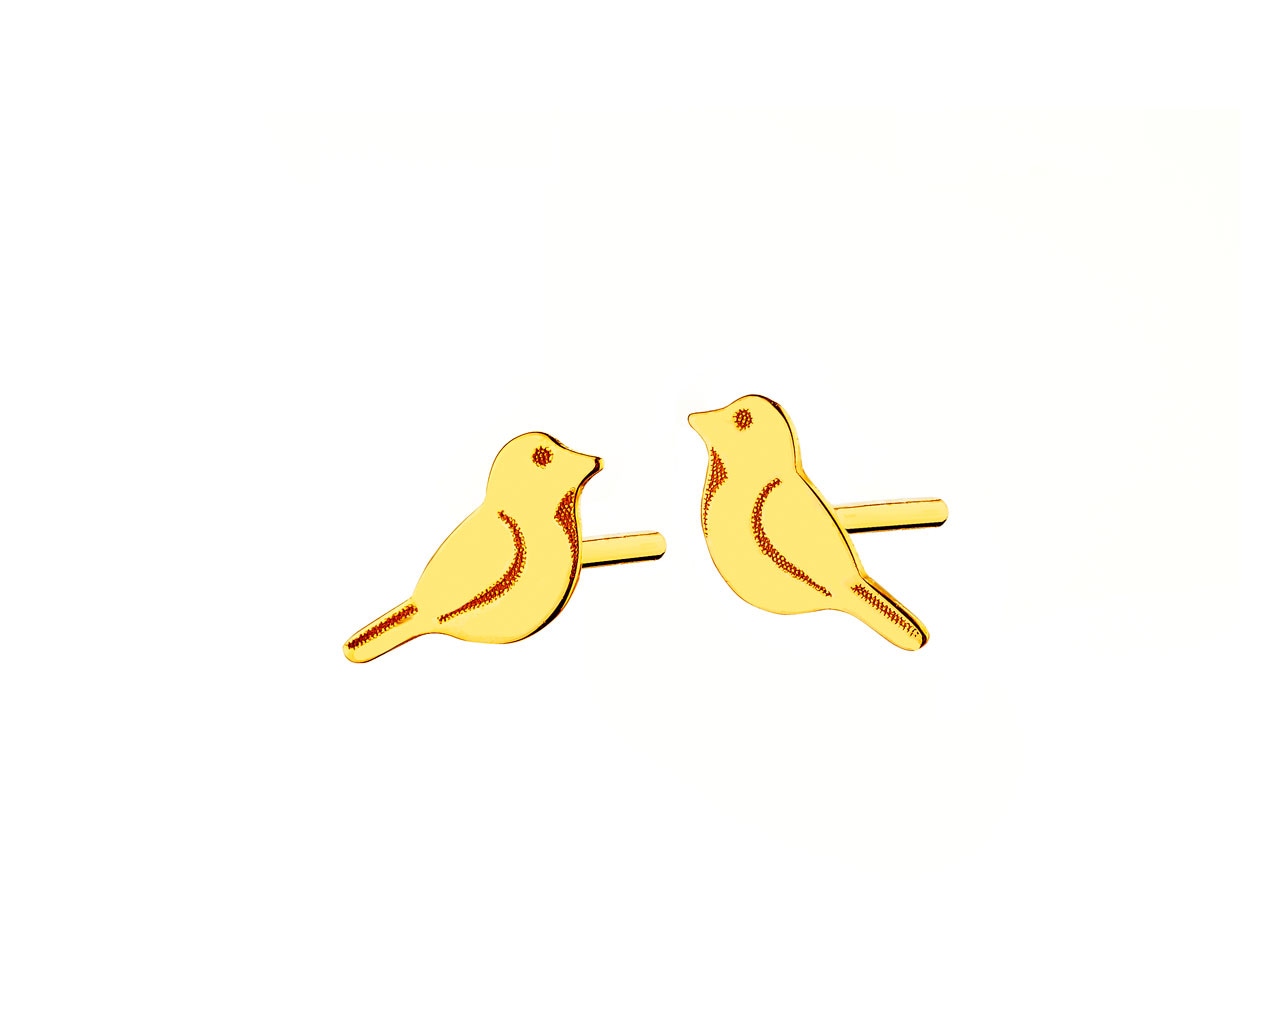 Zlaté náušnice - ptáci